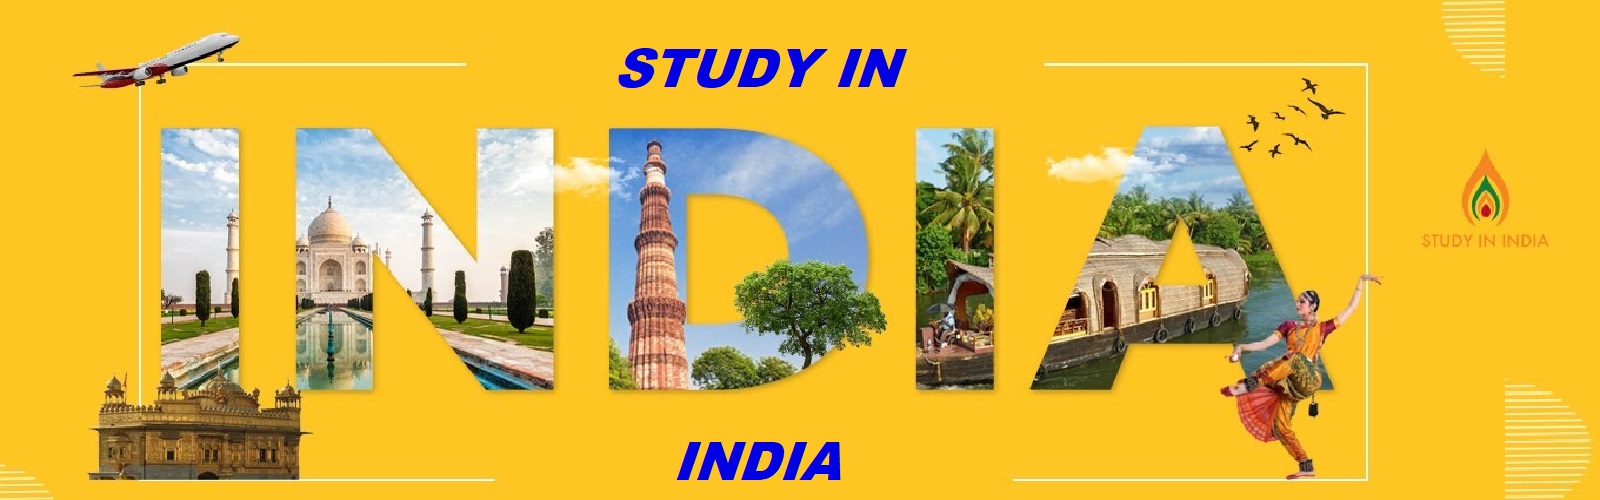 Offre de bourses d’études en Inde dans le cadre du programme « Lata Mangeshker »